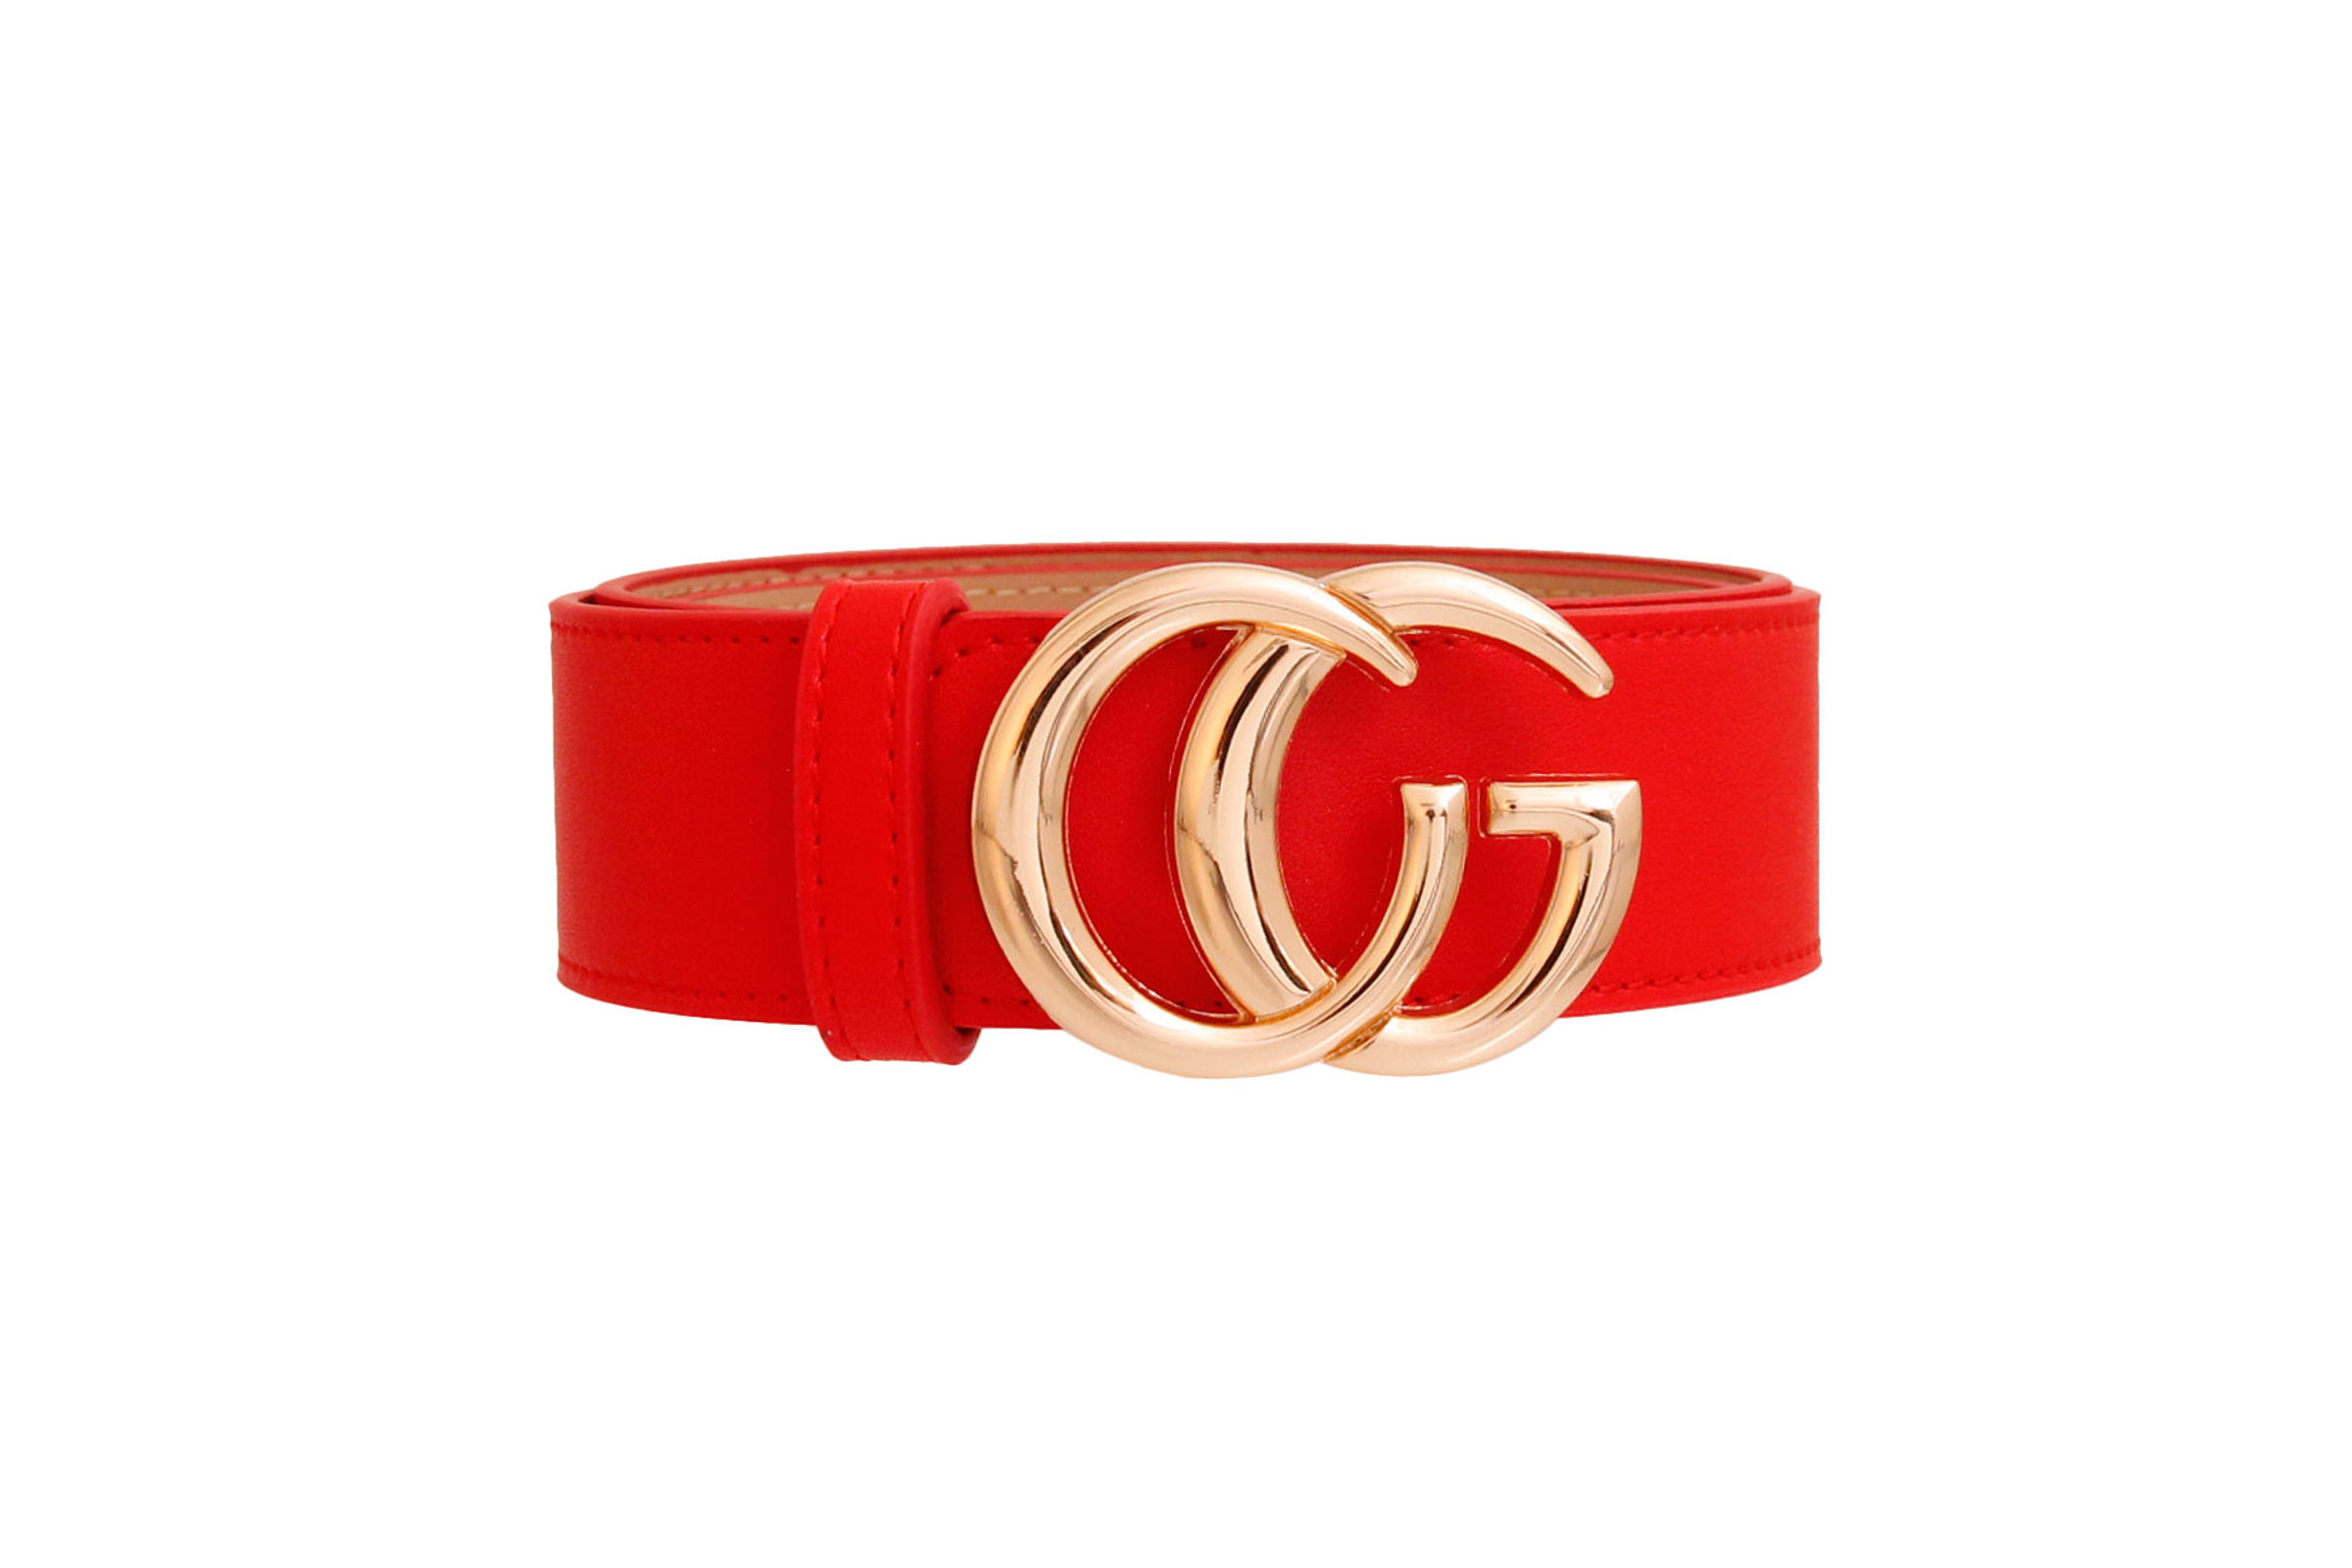 Red and Gold G Designer Belt